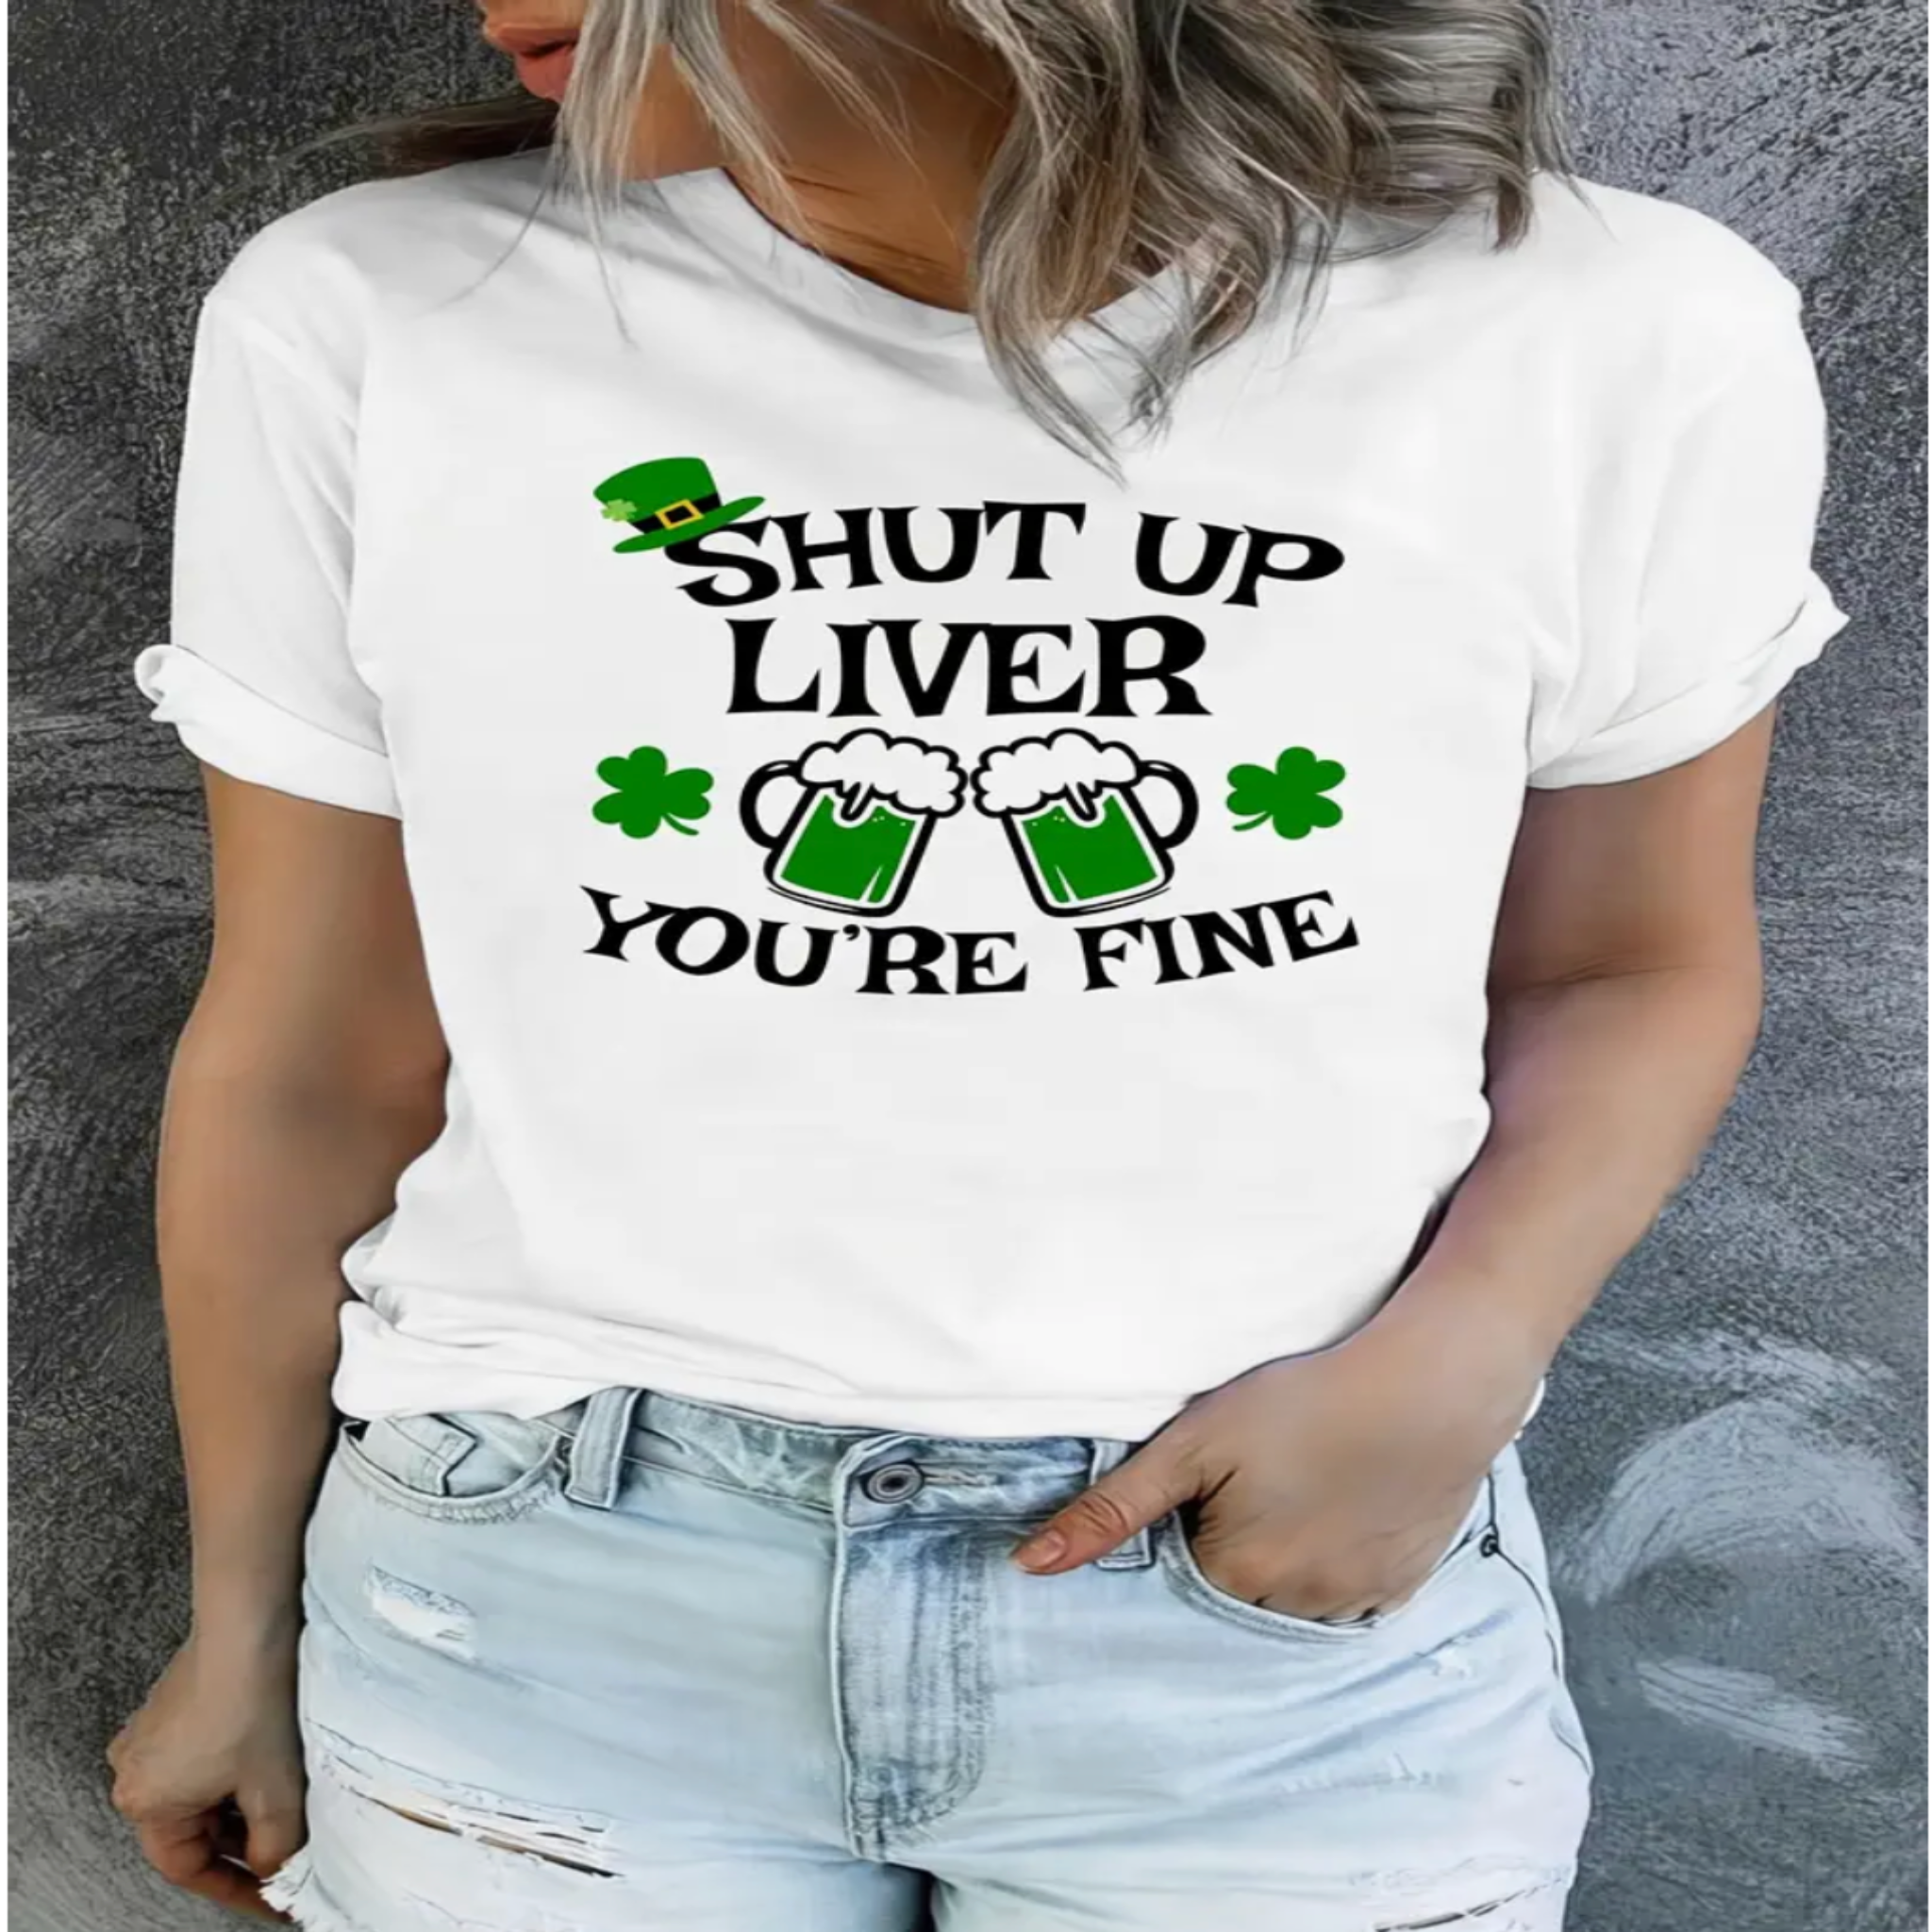 Shut Up Liver T-shirt